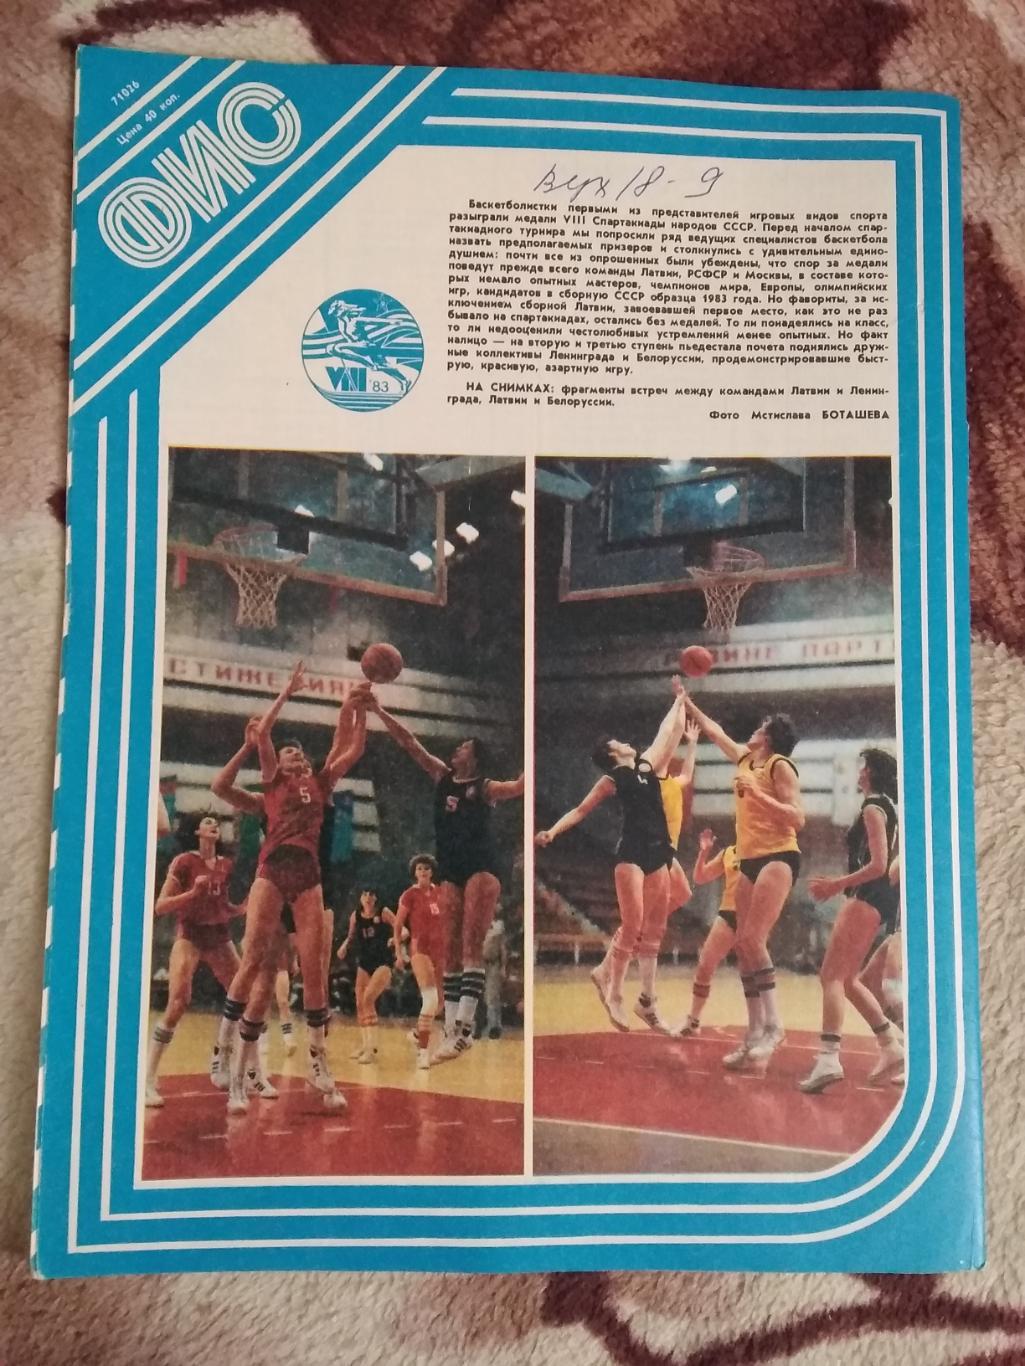 Журнал.Физкультура и спорт № 7 1983 г. (ФиС). 2